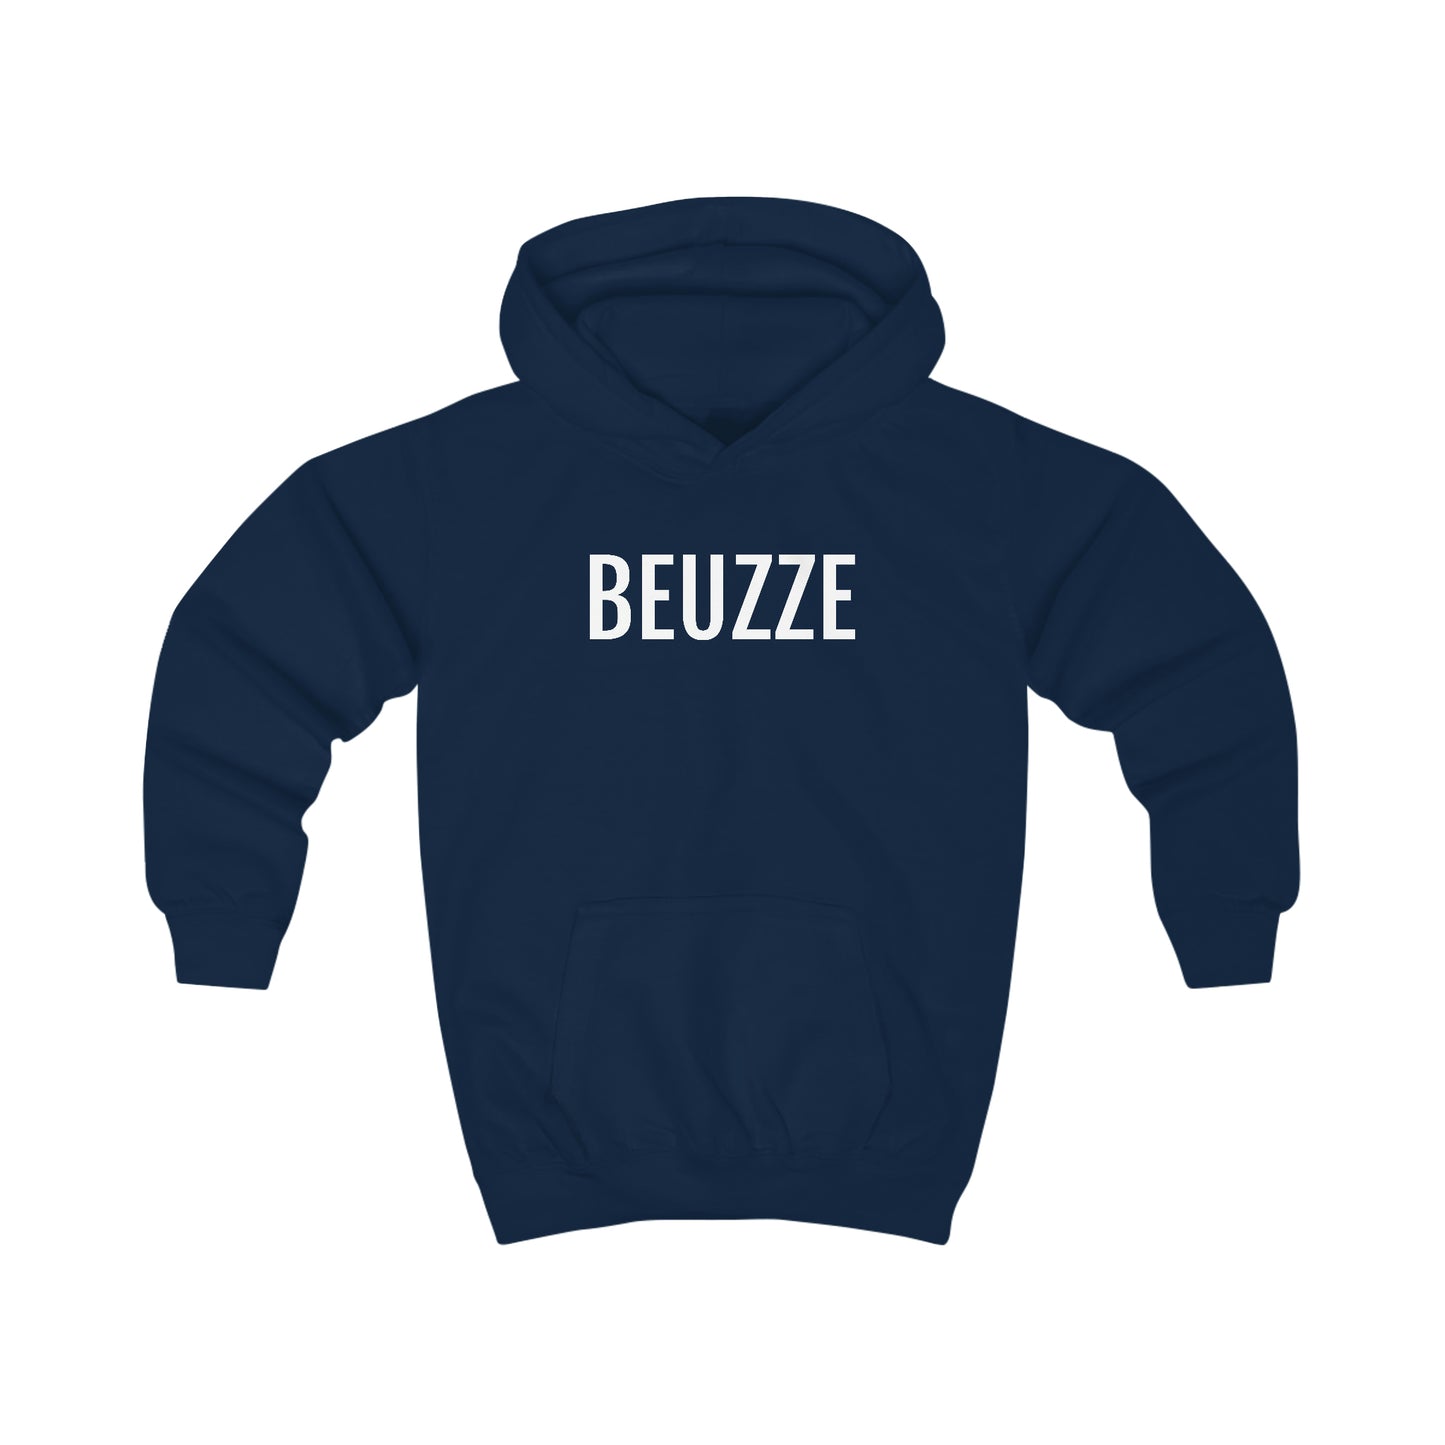 Marine blauwe hoodie met grappige opdruk uit Brussel